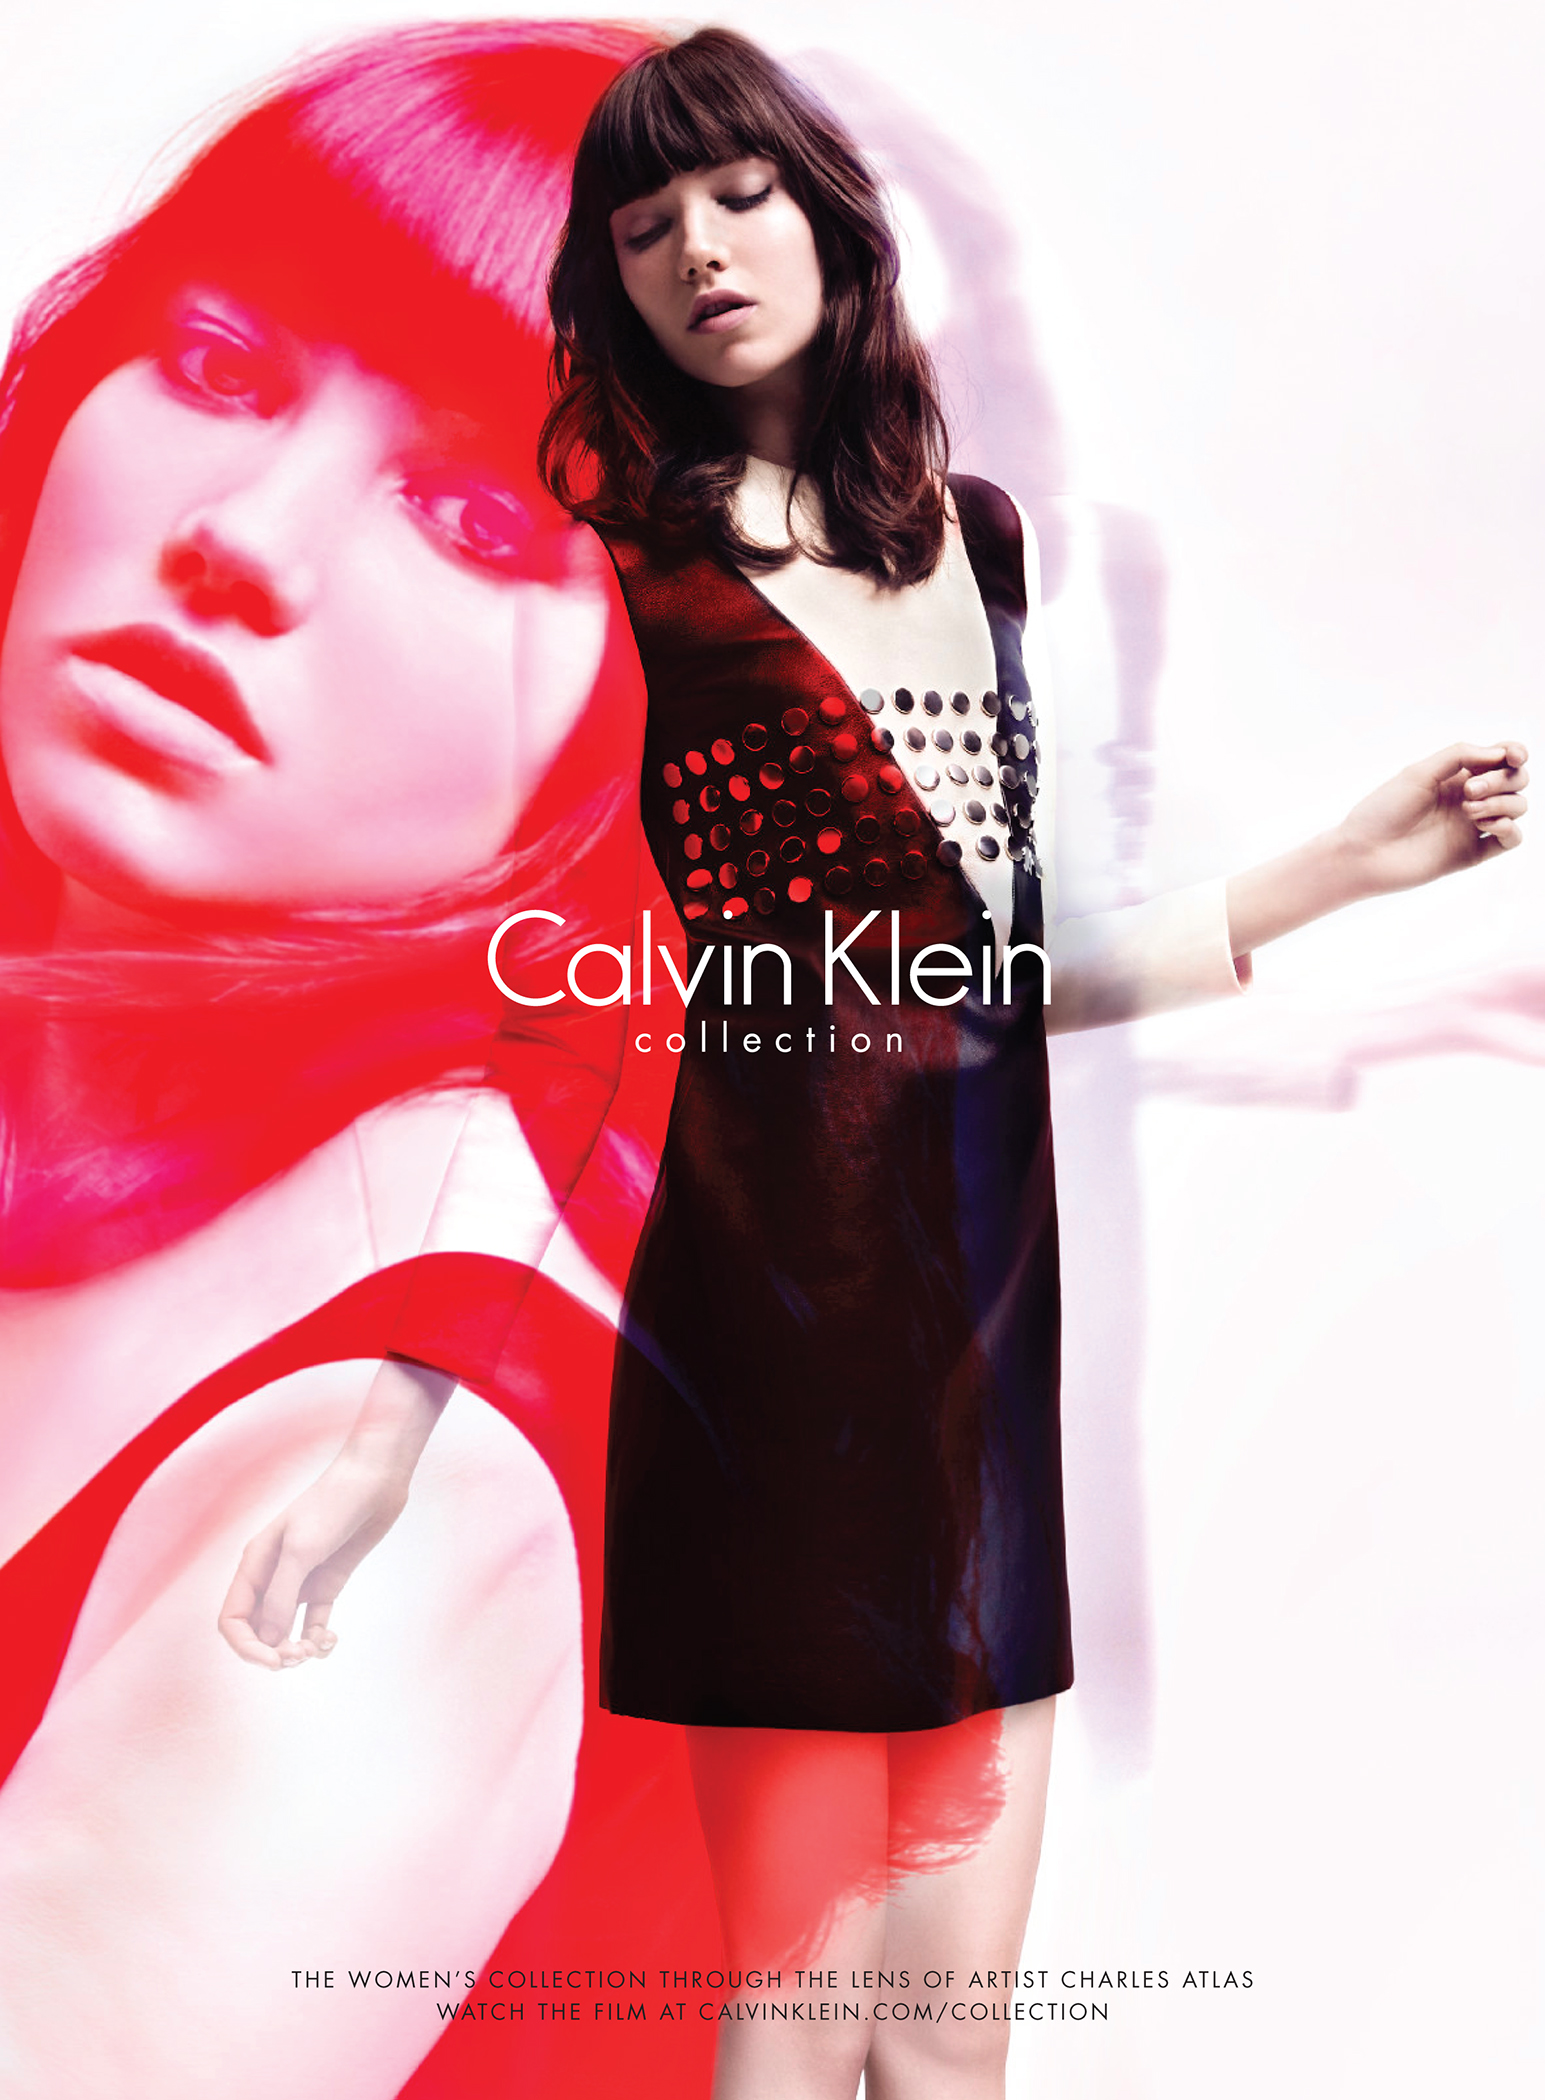 Charles Atlas, uniendo el arte y la moda a través de Calvin Klein